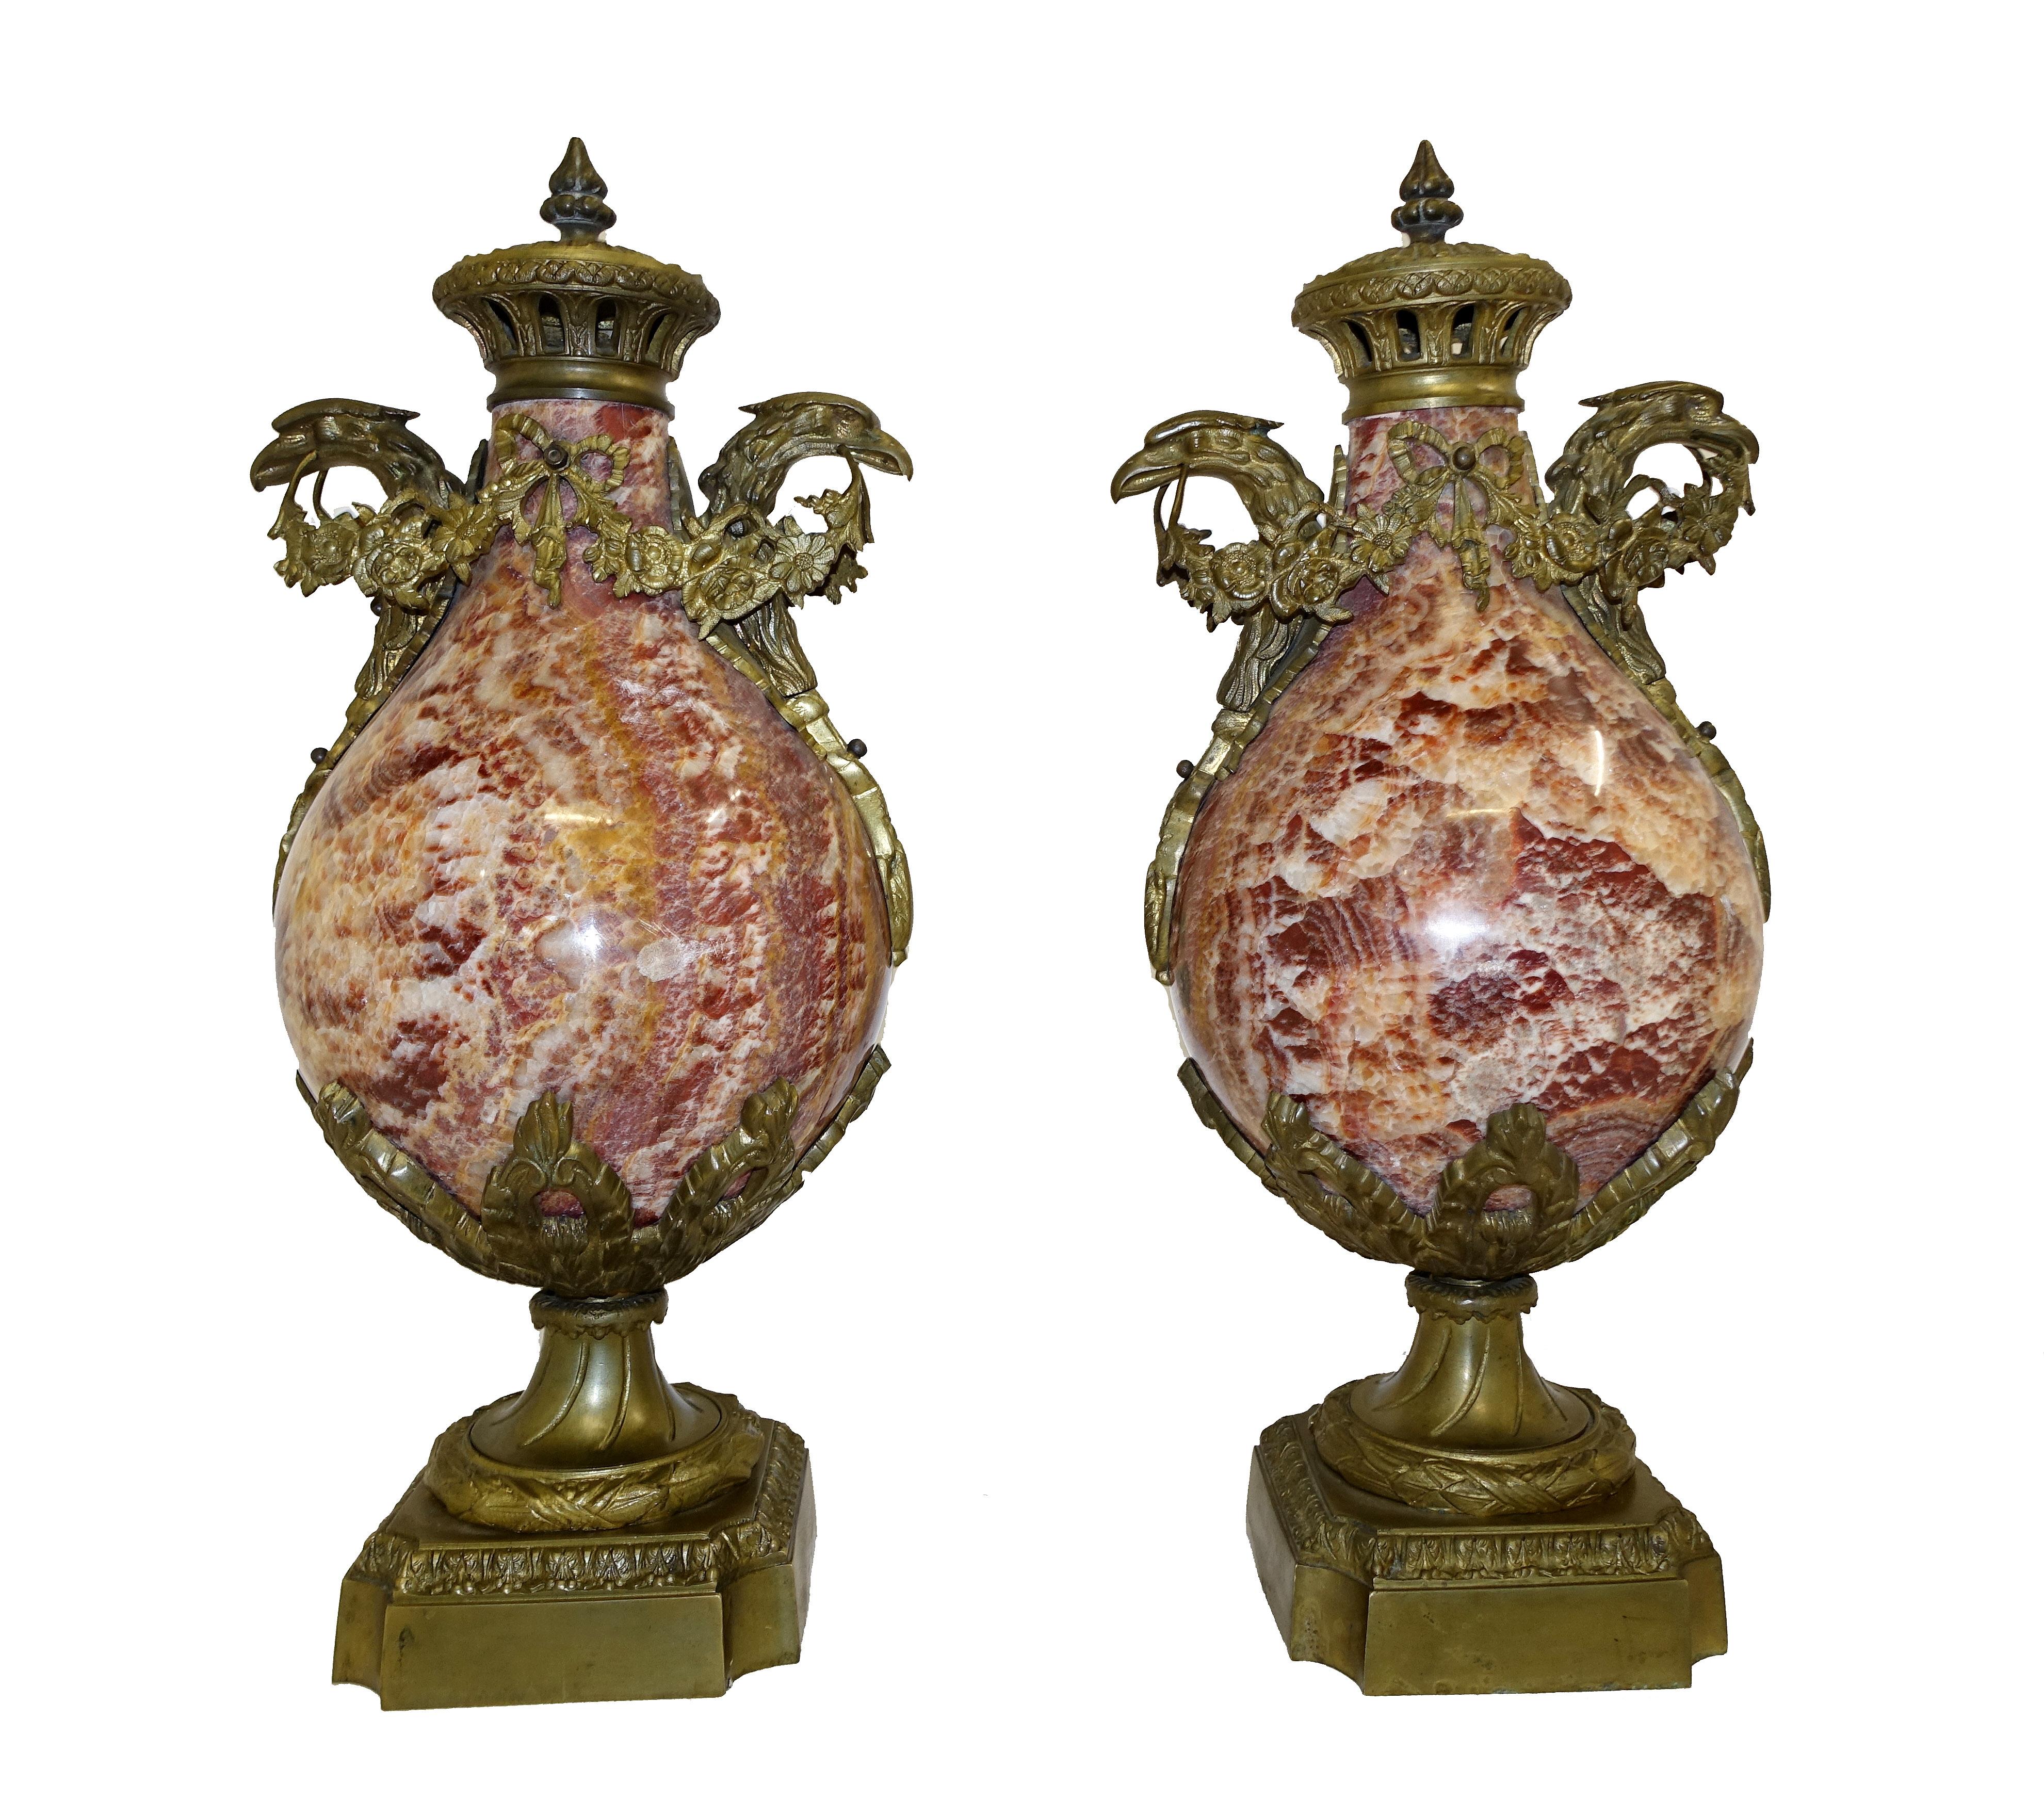 Elegante paire d'urnes anciennes en marbre - ou cassolettes
Grande forme bulbeuse du corps de l'urne
J'adore l'association de couleurs avec l'orange brûlé, les rouges profonds et l'ocre, qui ont un effet magnifique.
Les luminaires en bronze doré